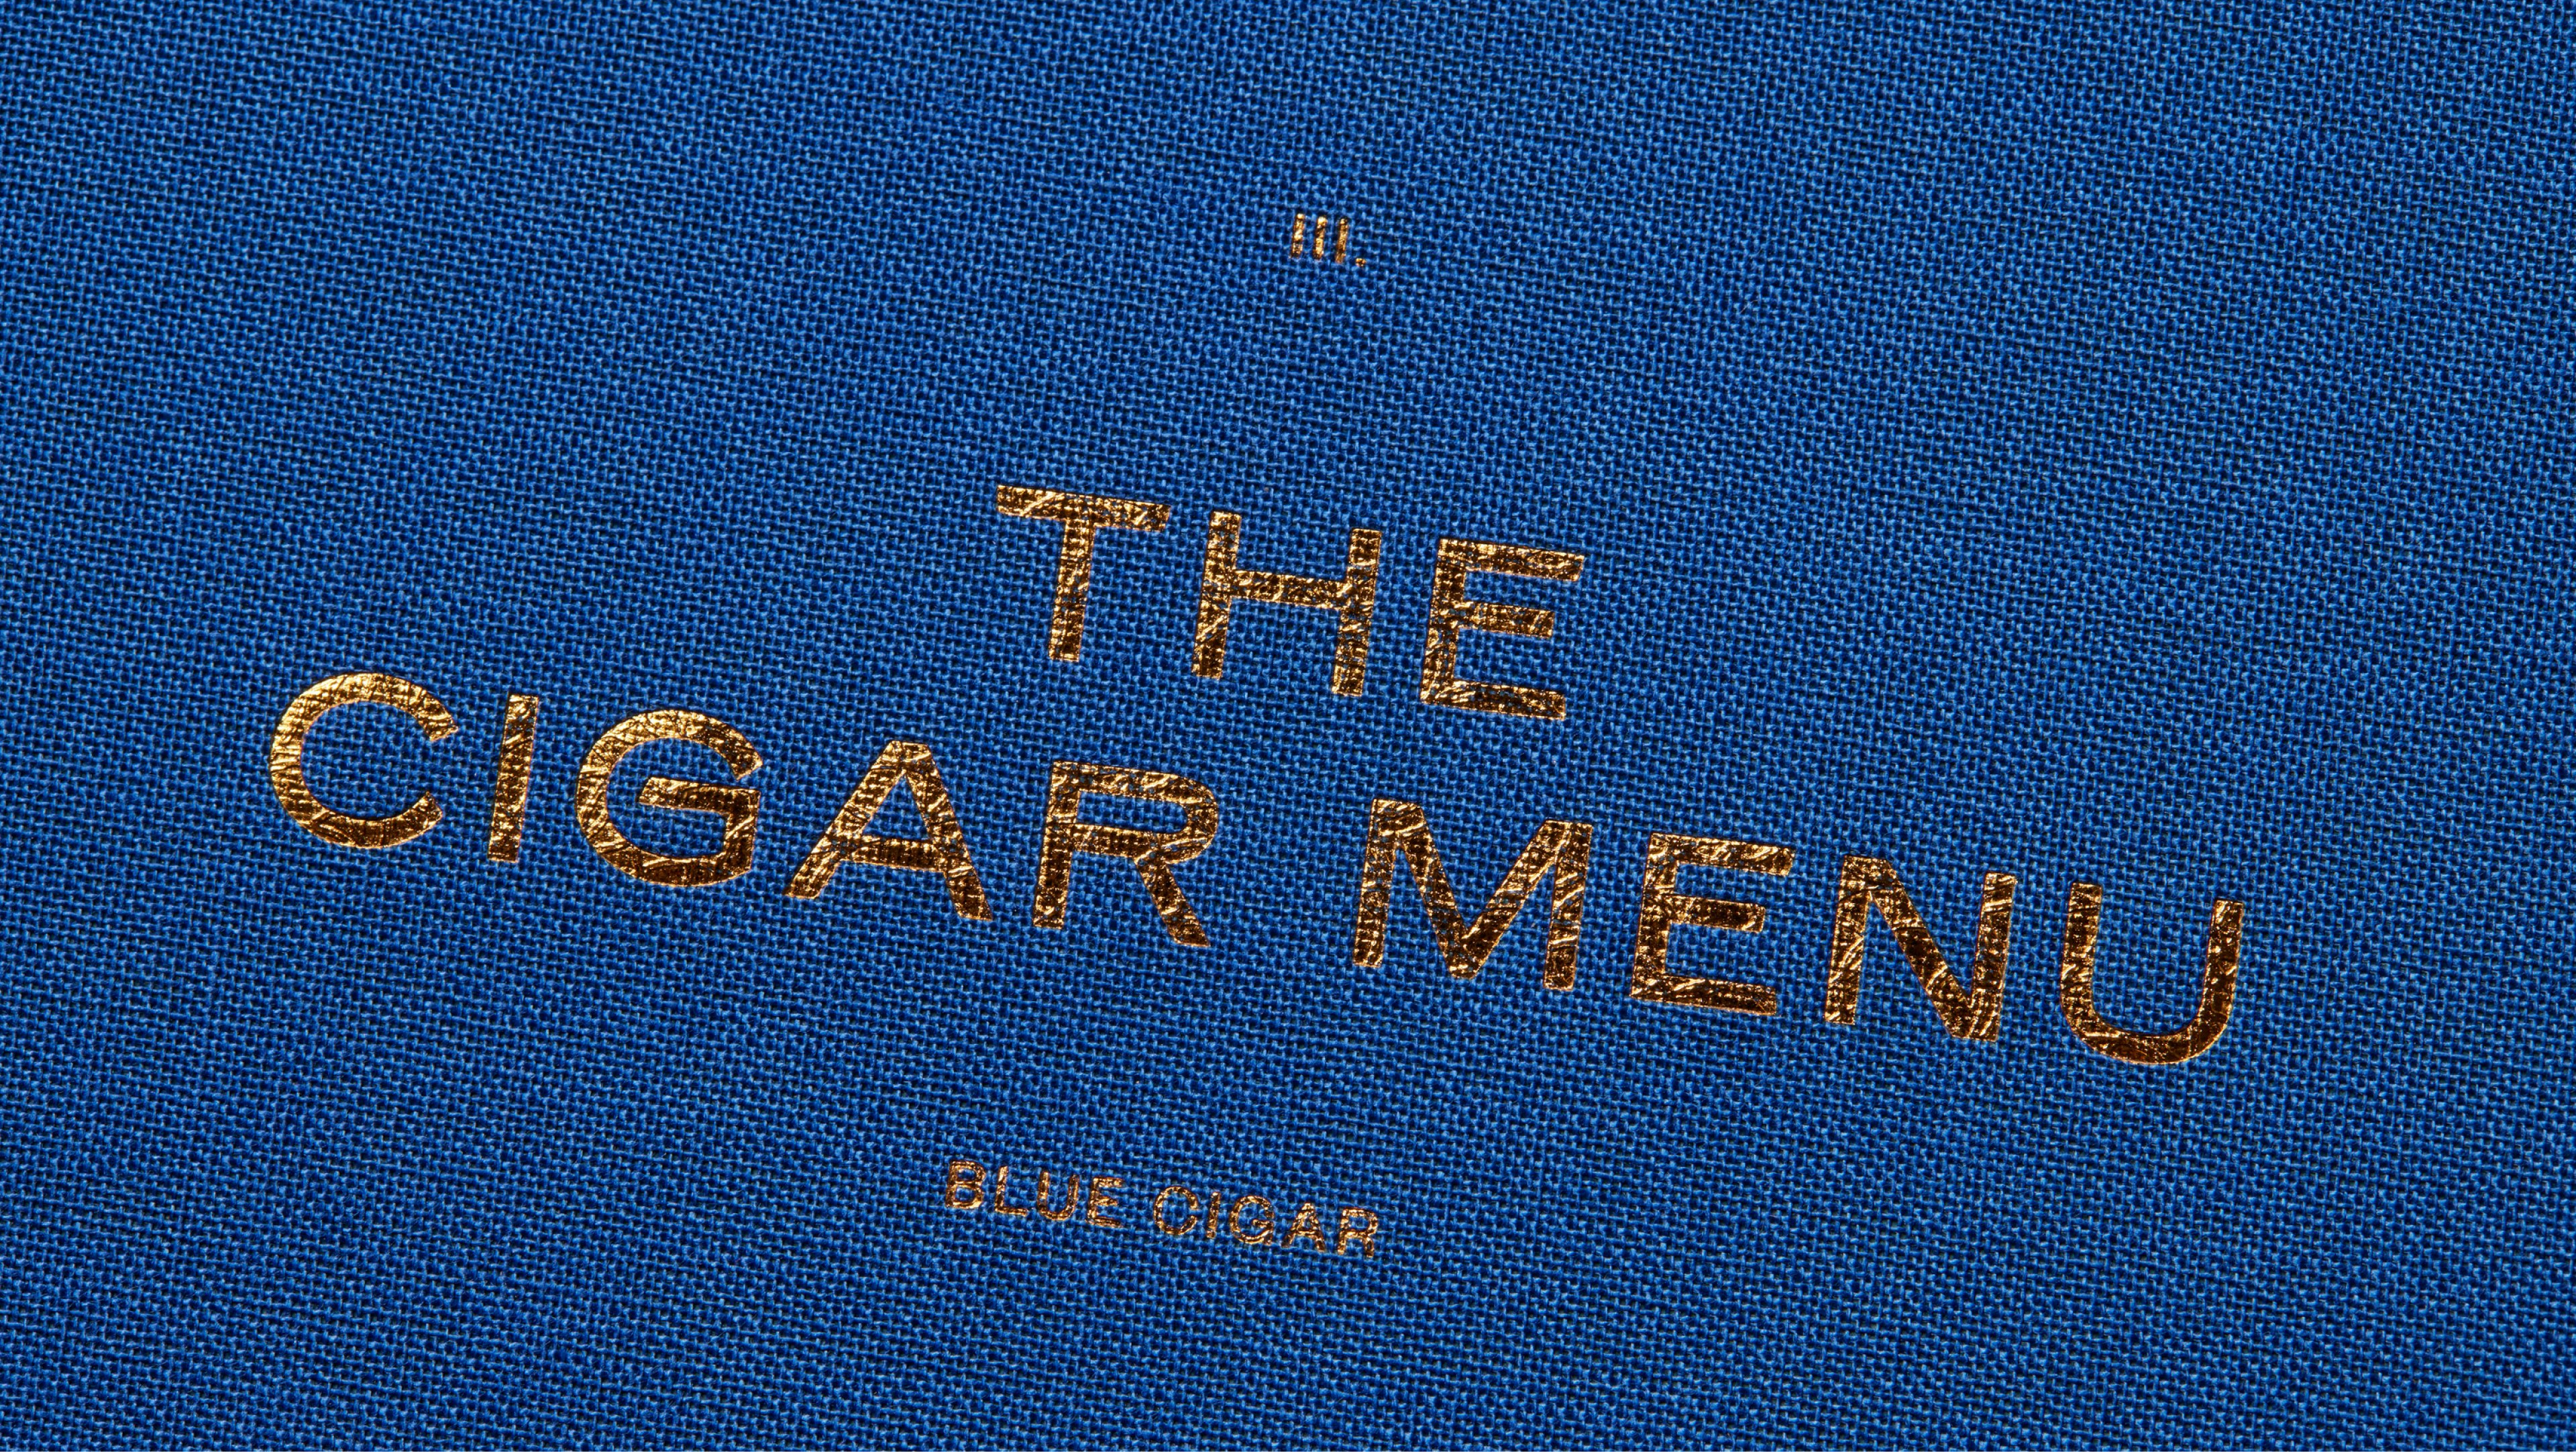 The blue cigar menu detail